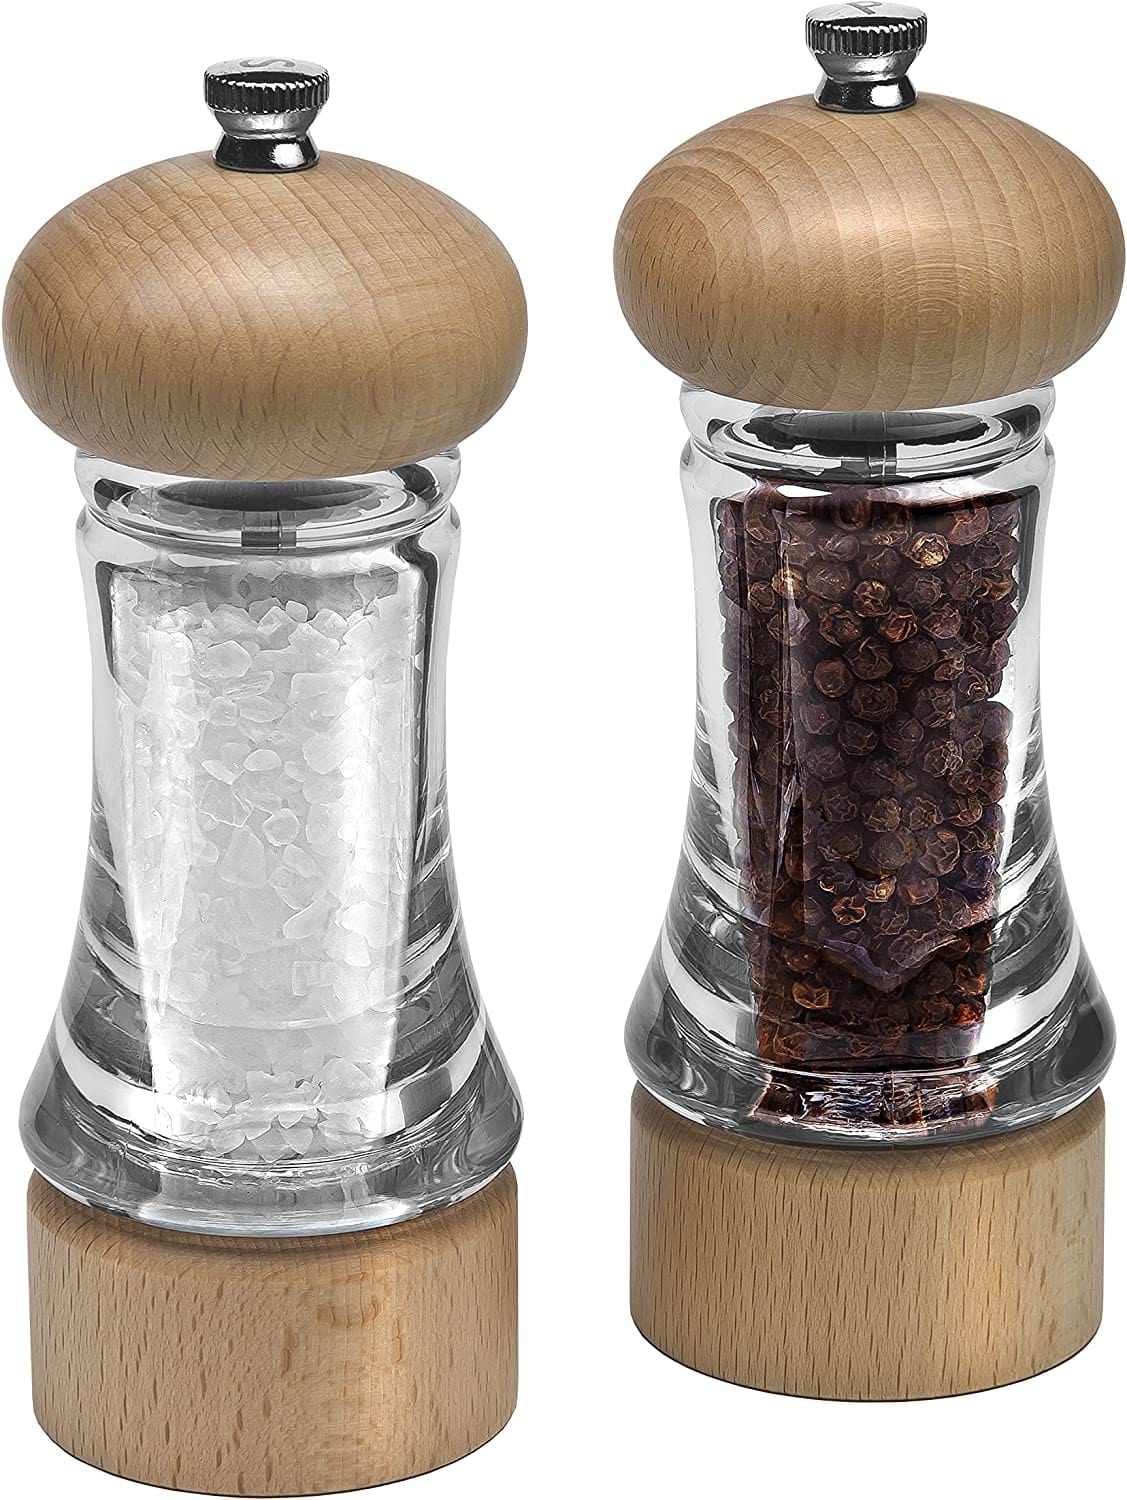 https://www.kooihousewares.com/cdn/shop/files/zyliss-salt-pepper-shakers-cole-mason-beech-wood-acrylic-salt-pepper-mill-set-30221213499427_1800x1800.jpg?v=1690825143